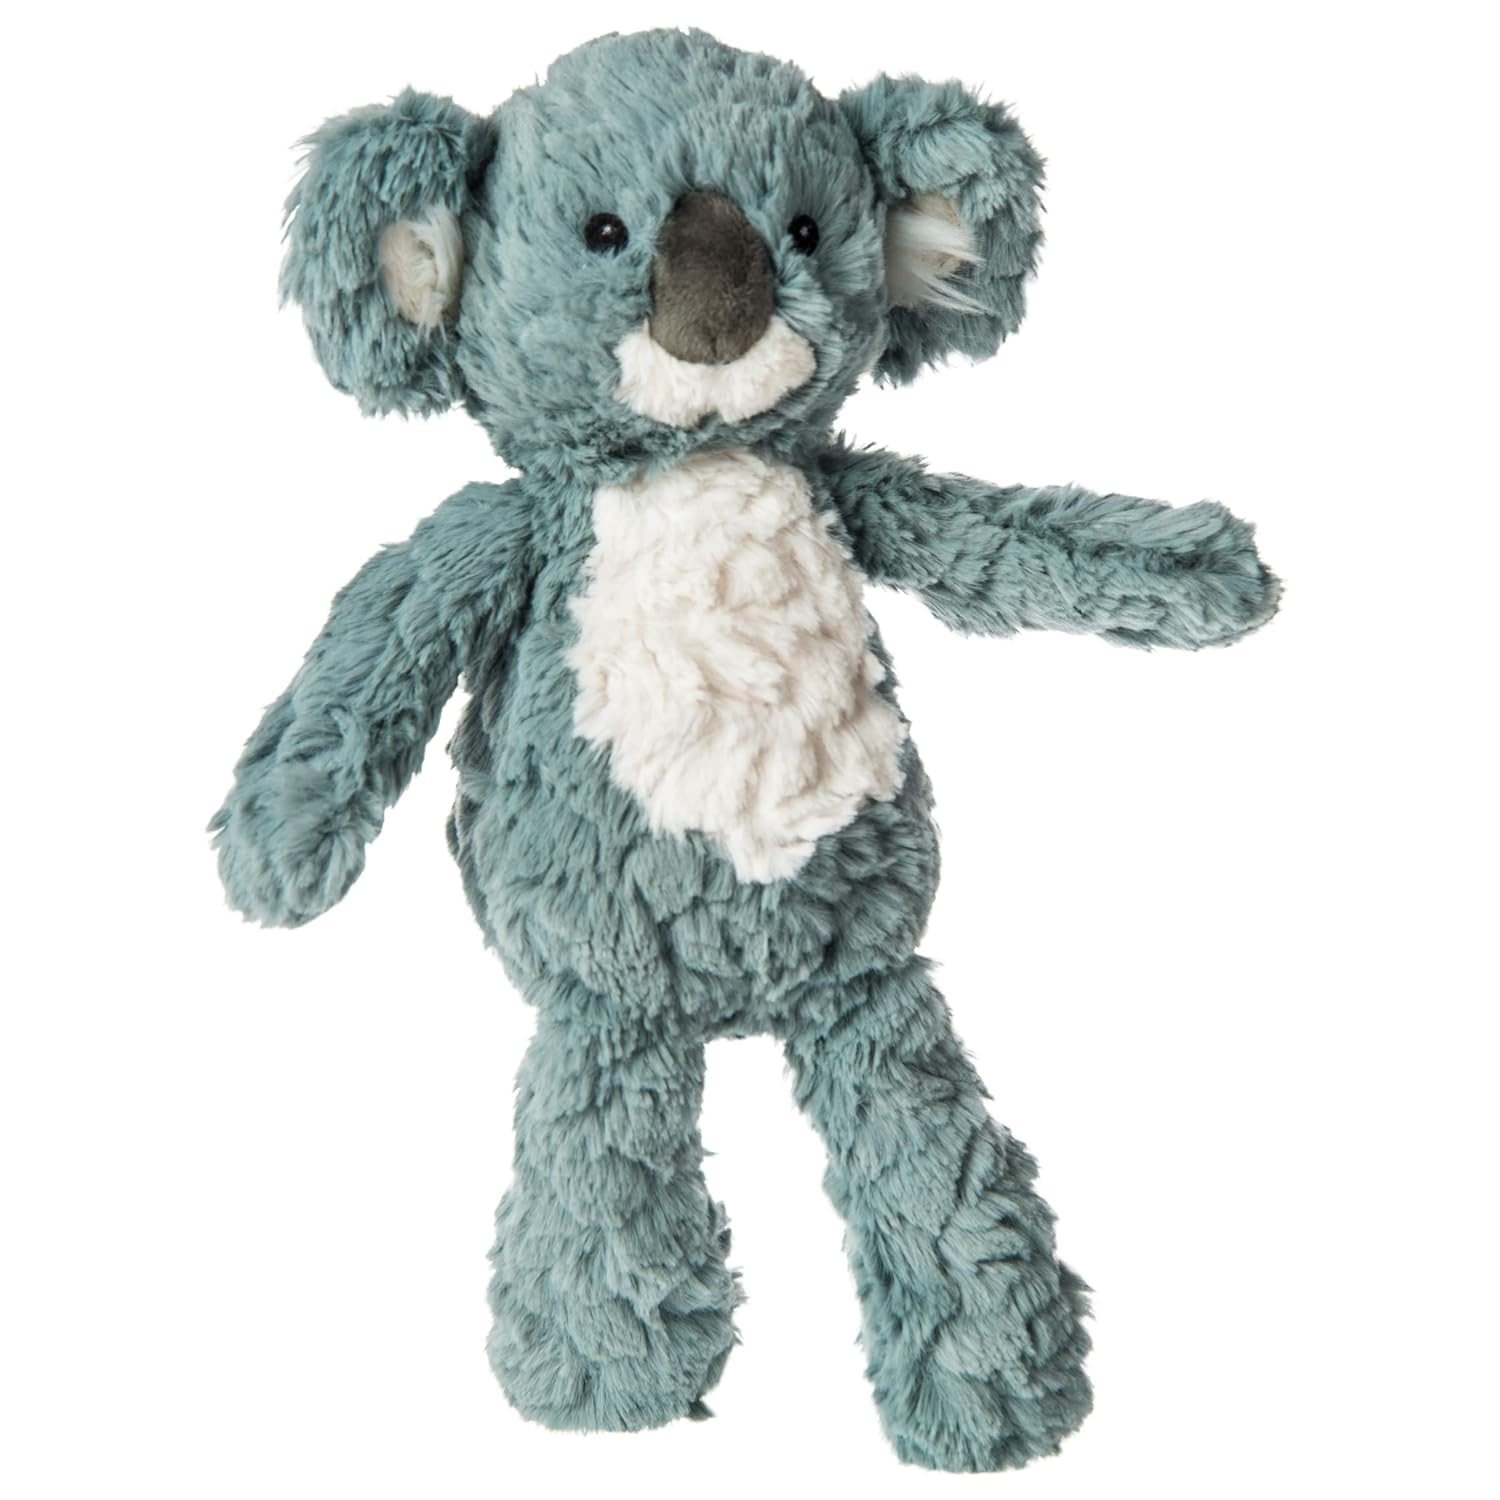 Slate-blue and white koala soft toy